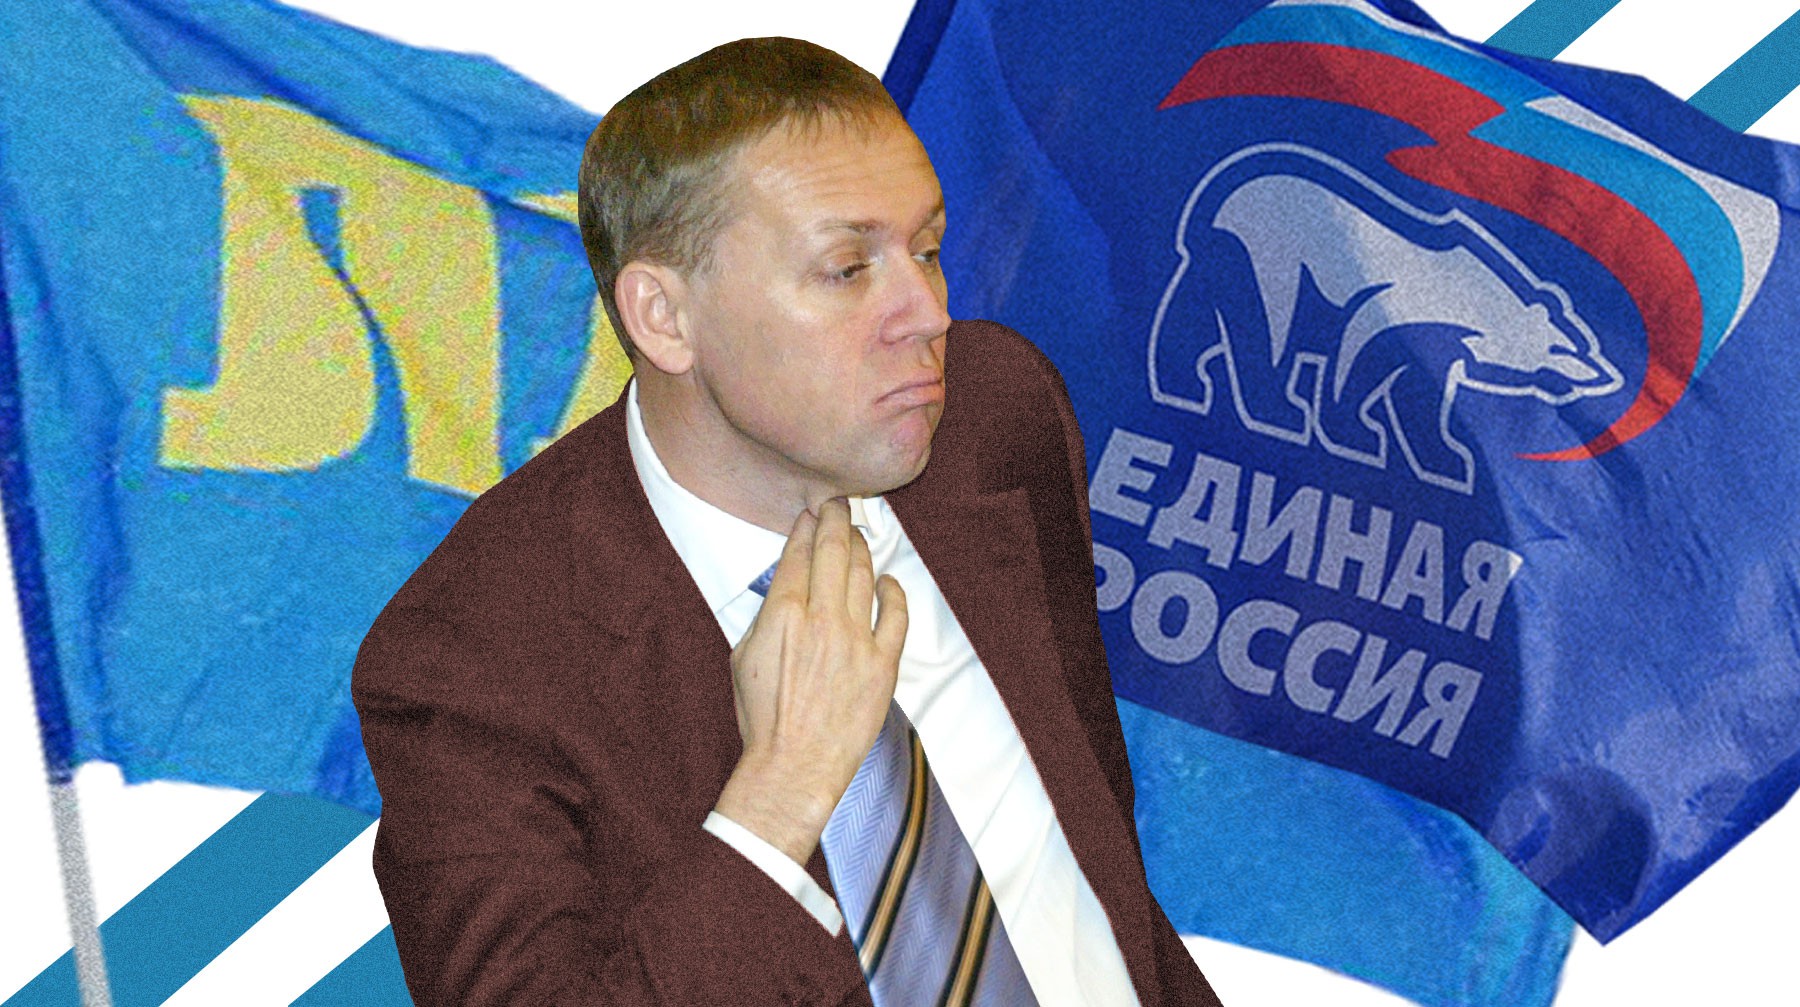 Dailystorm - Игорь Лебедев: Луговой должен либо застрелиться, либо выйти из фракции